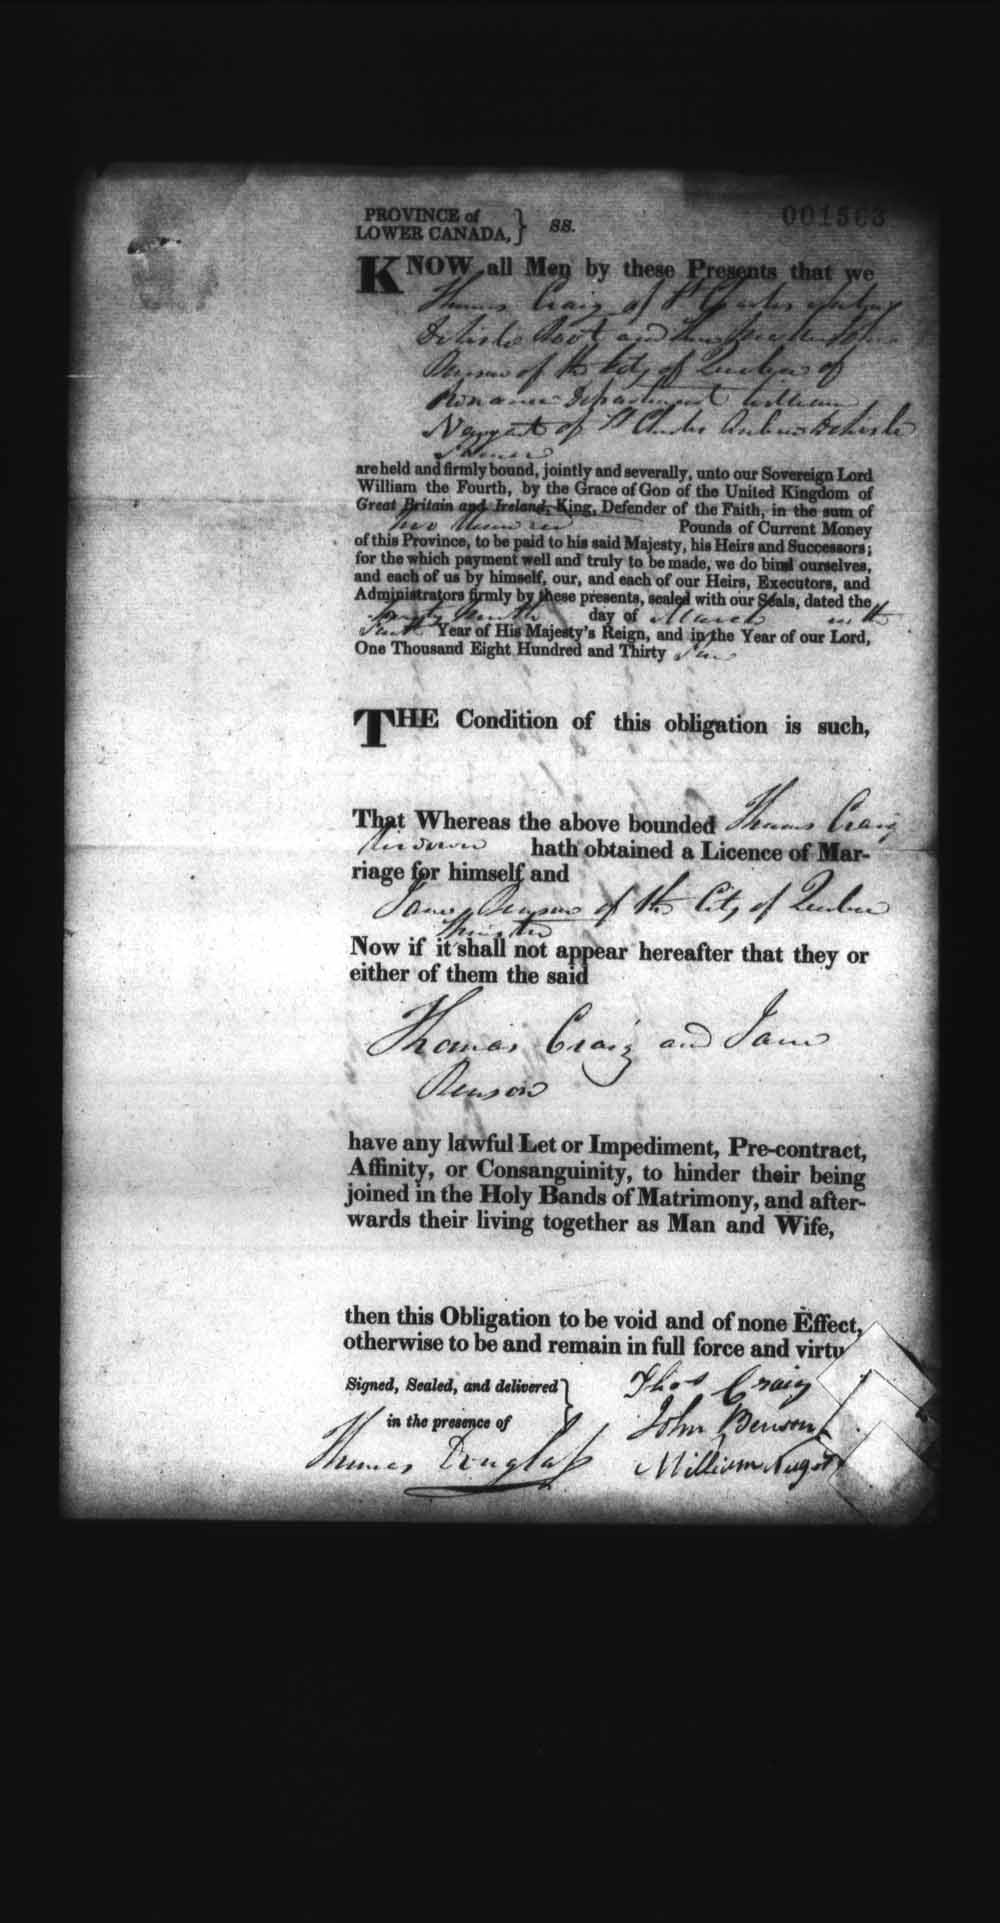 Page numérisé de Cautionnements de mariages pour le Haut-Canada et le Bas-Canada (1779-1865) pour l'image numéro: e008237873